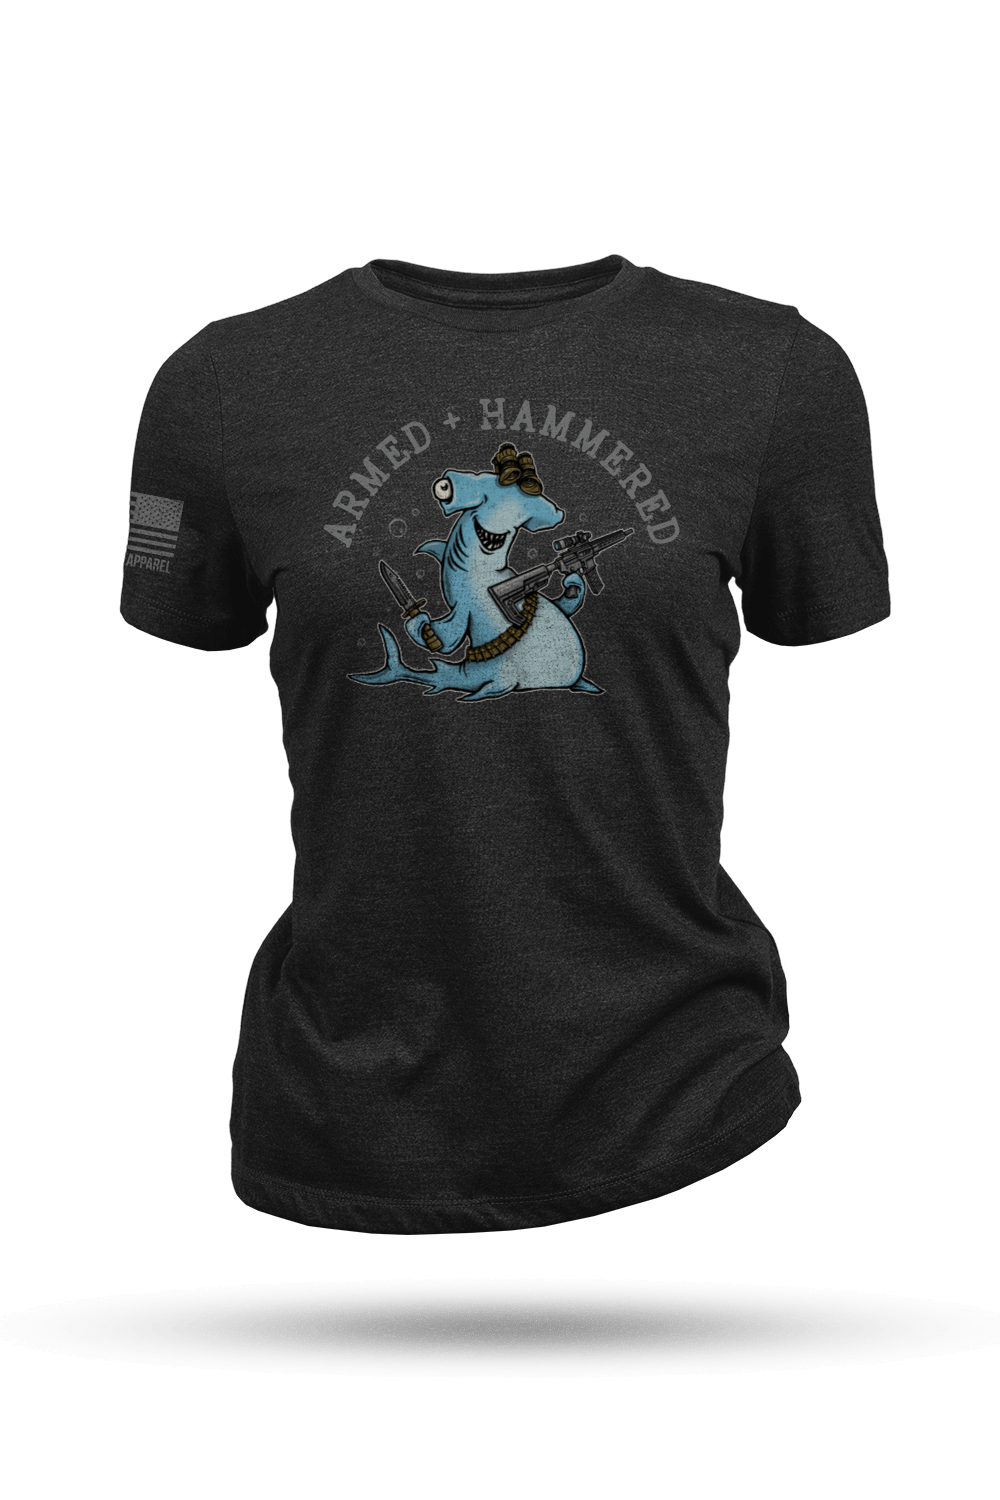 Women's T - Shirt - Hammerhead